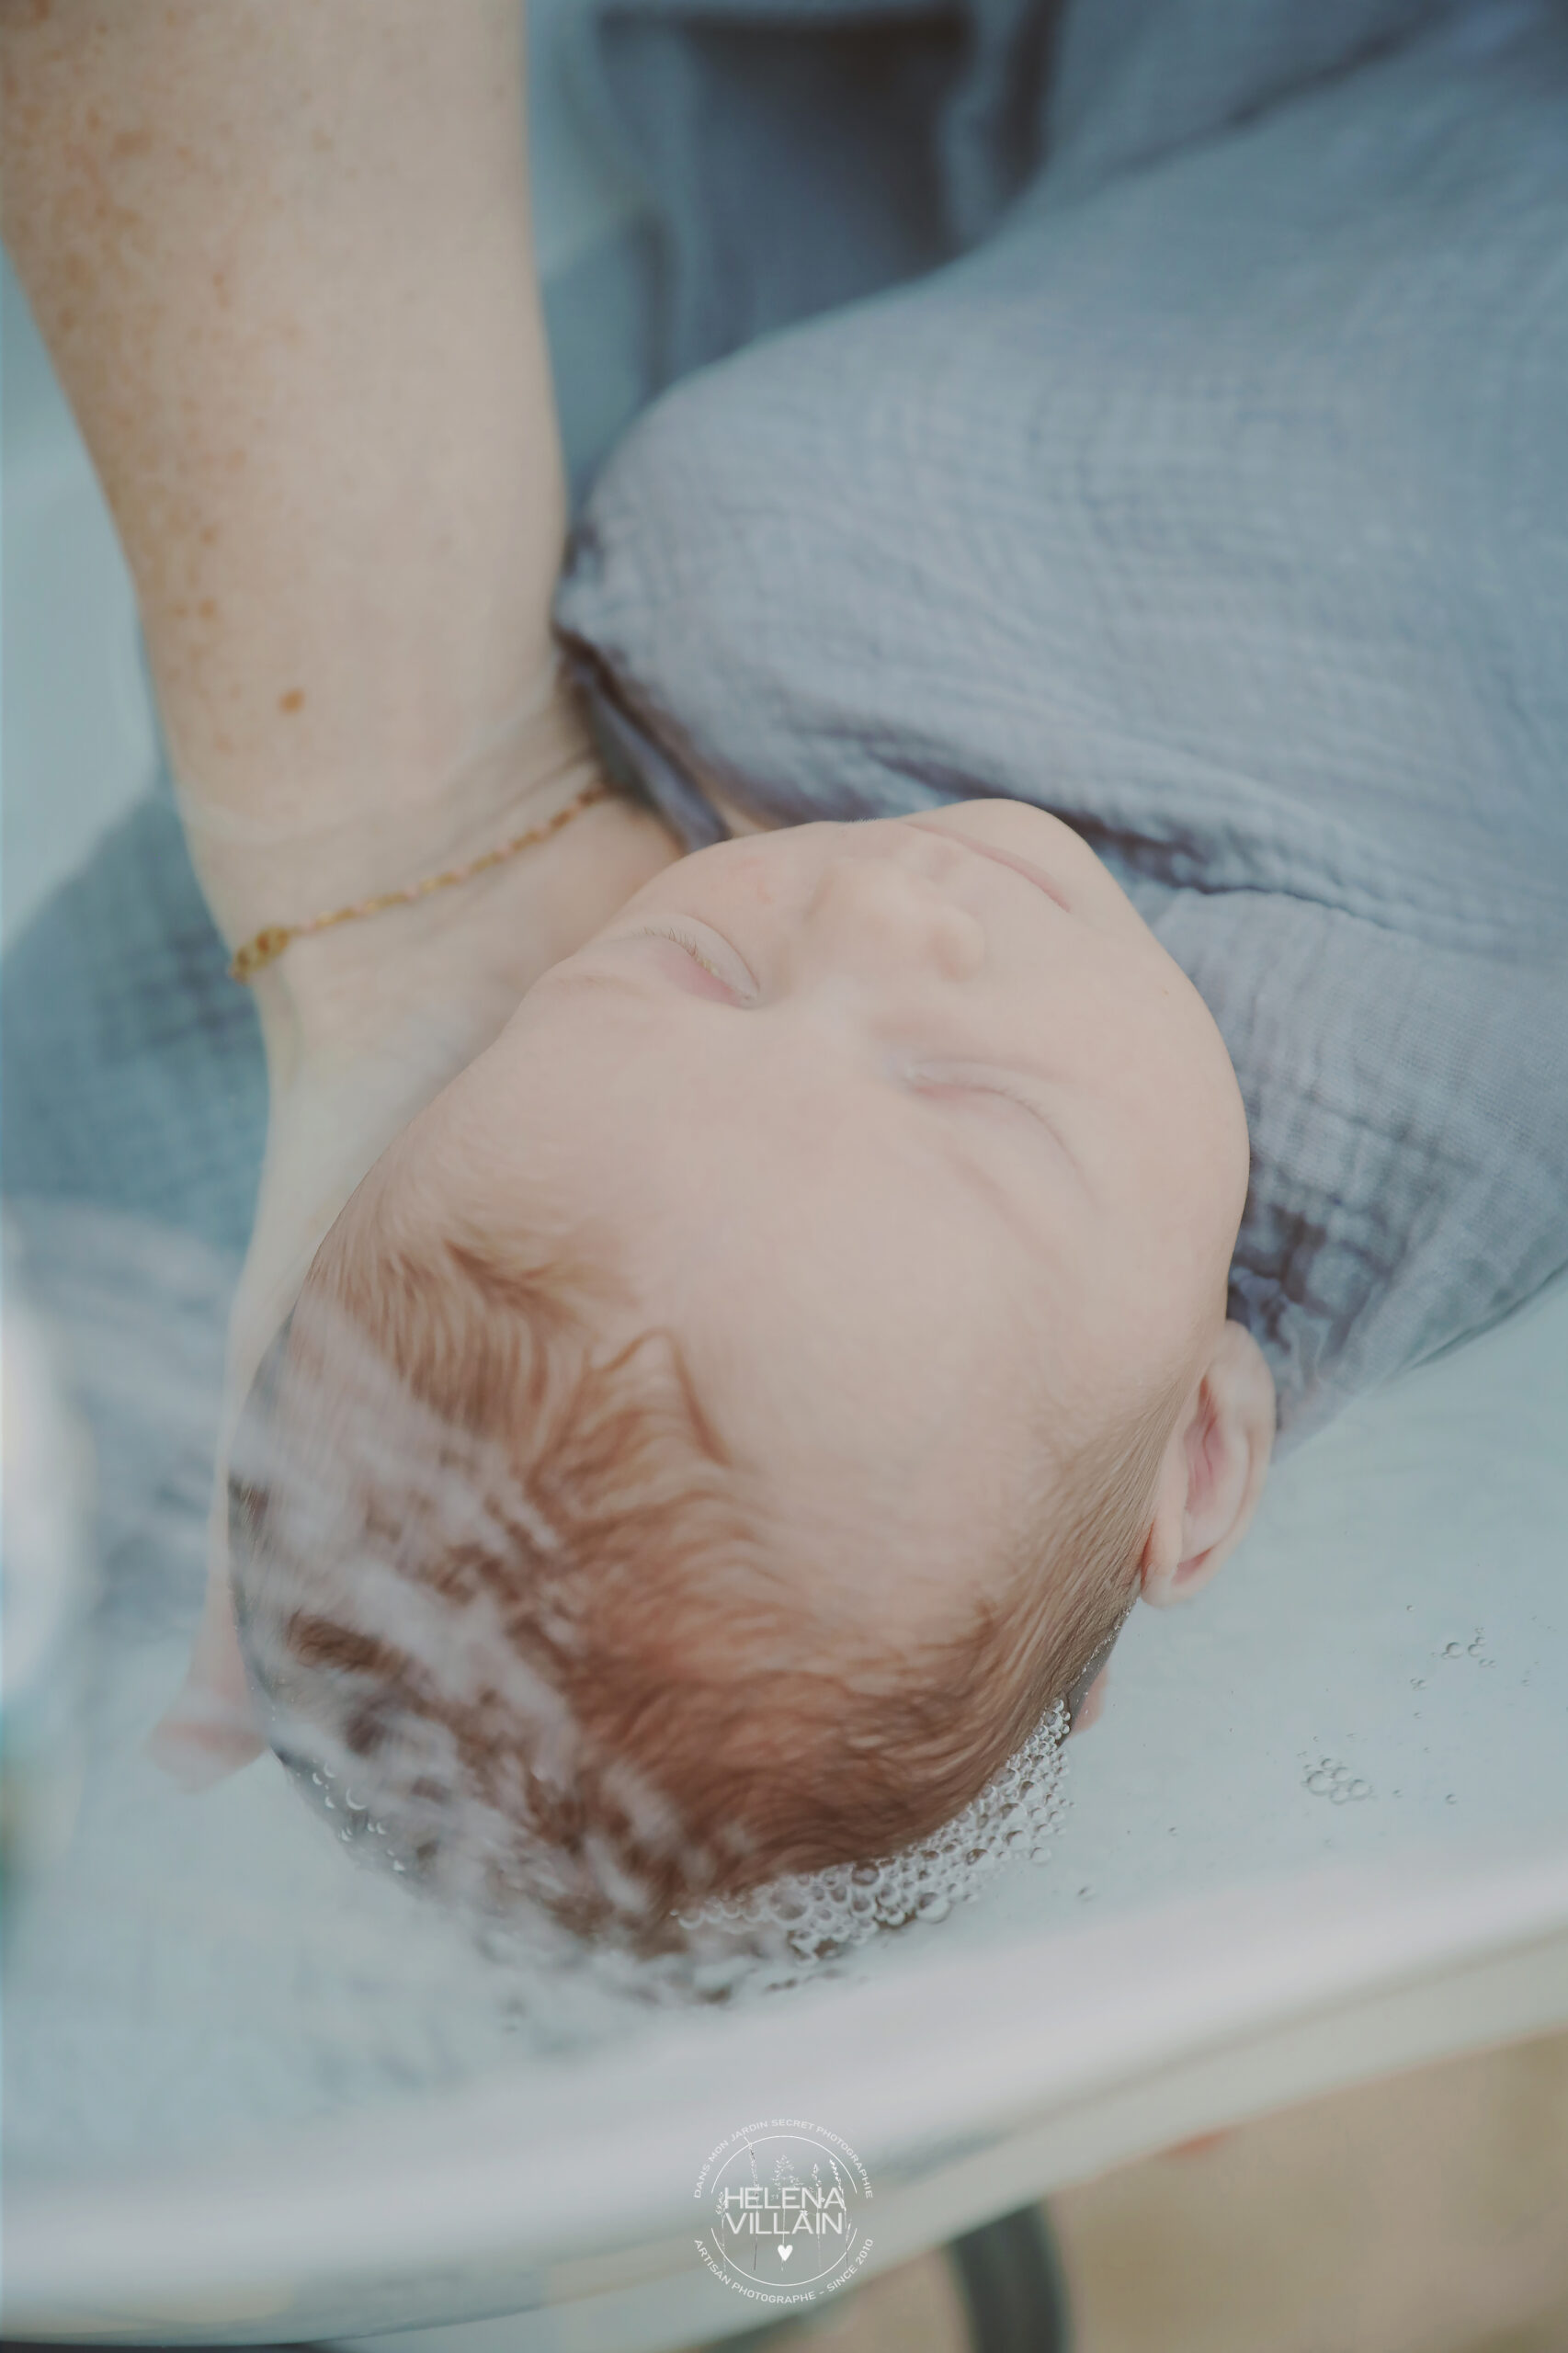 thérapeutique bain de bébé, bain enveloppé